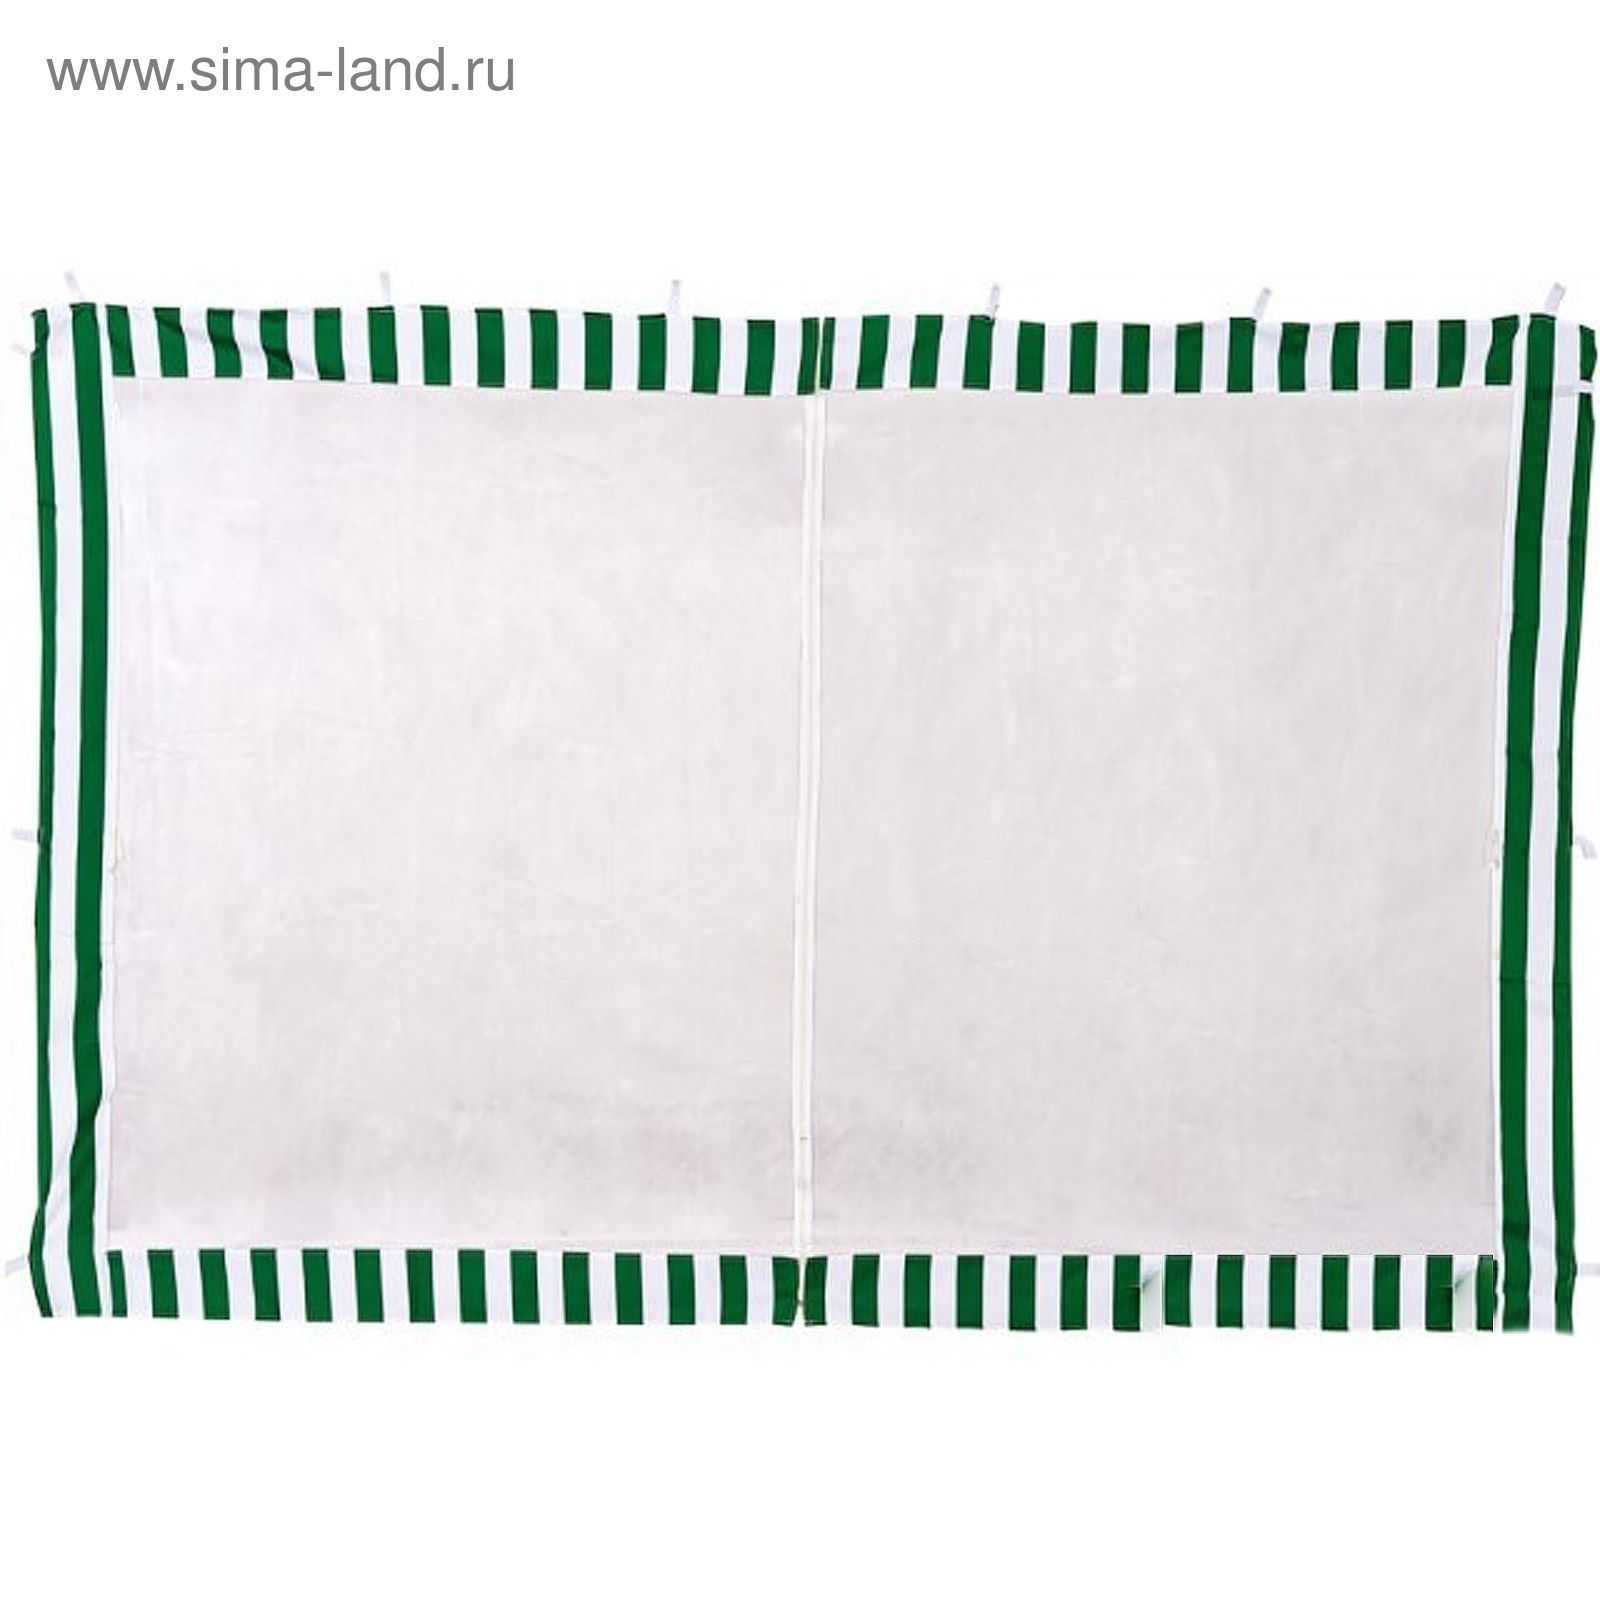 Стенка-сетка противомоскитная с молнией 2х4 м, зеленая